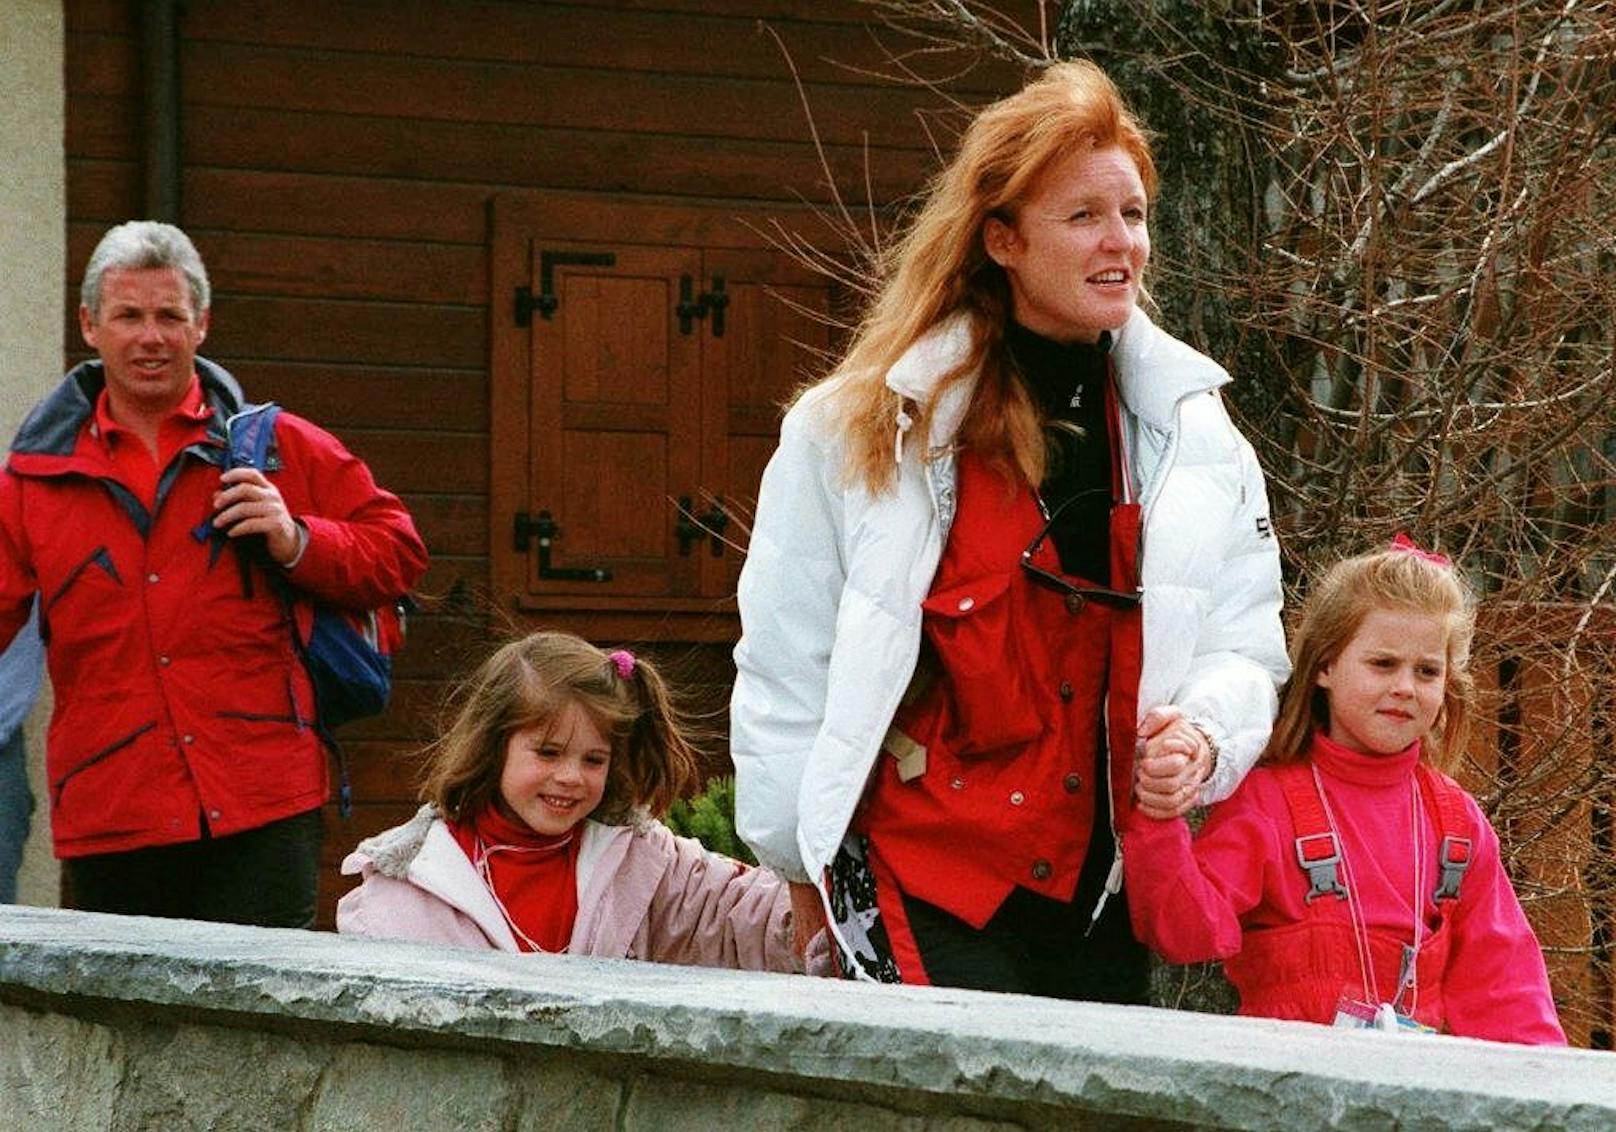 Schon vor dem Kauf hatte&nbsp;Prinz Andrew zusammen mit seiner Ex-Frau Sarah Ferguson und den beiden Töchtern Prinzessin Beatrice und Prinzessin Eugenie jahrelang Ferien in dem Haus&nbsp;Walliser Nobelskiort Verbier gemacht.